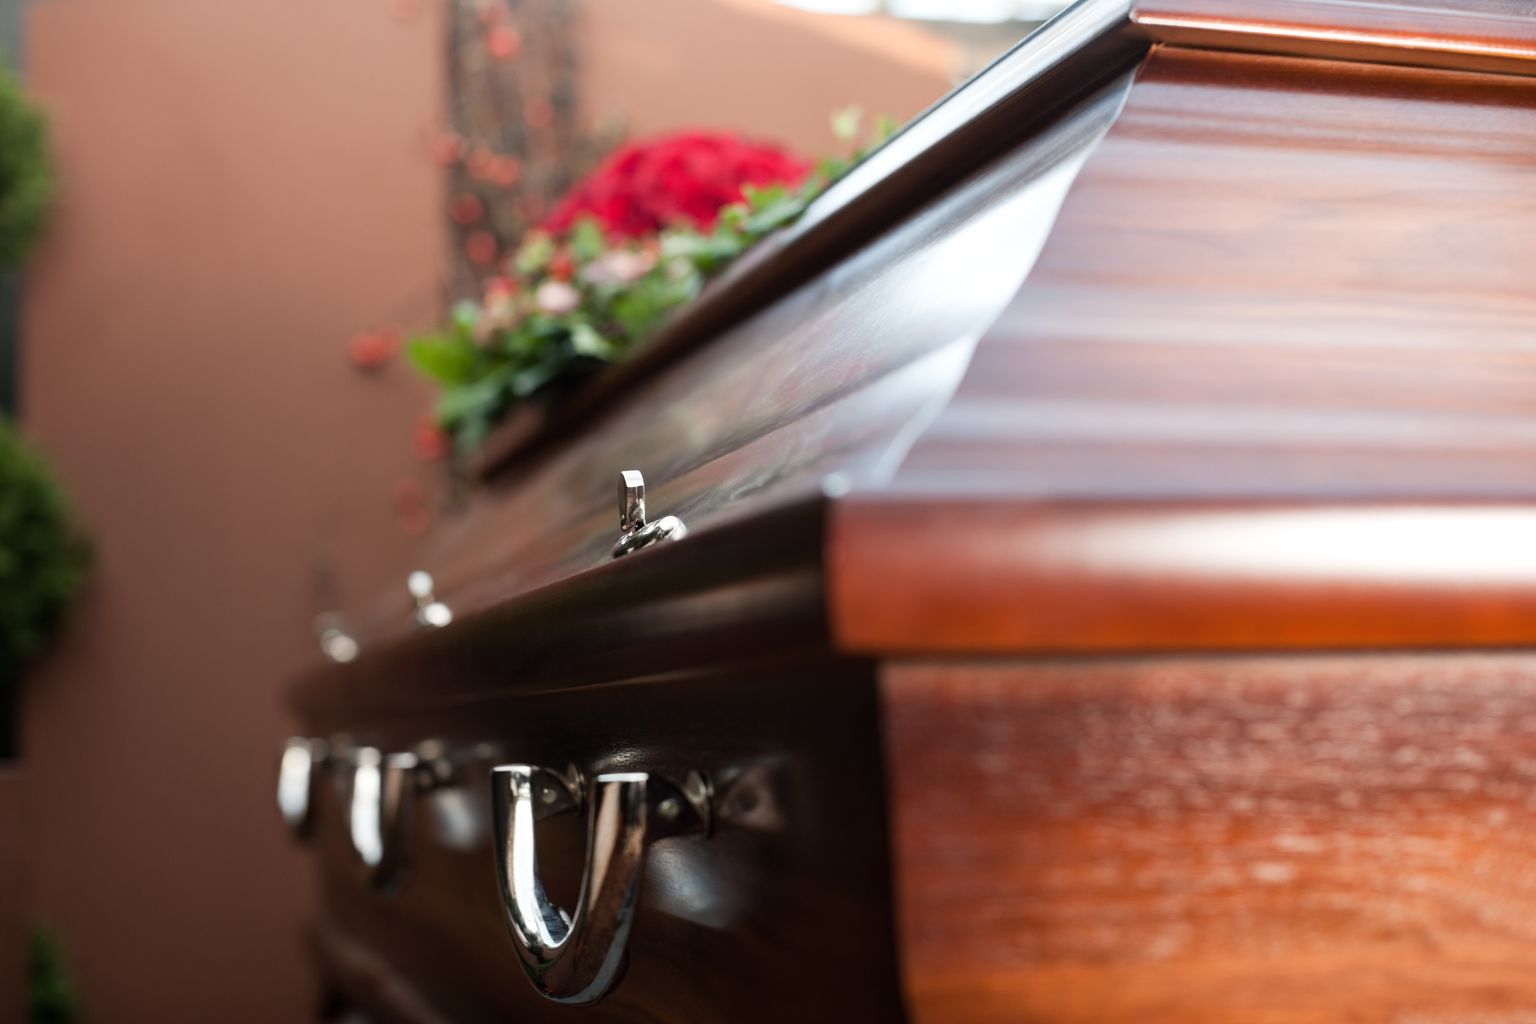 Pere hakkas juba 20-aastase naise matuseid korraldama ja kirstu valima, kui selgus, et naine oli tegelikult elus. Pilt on illustreeriv